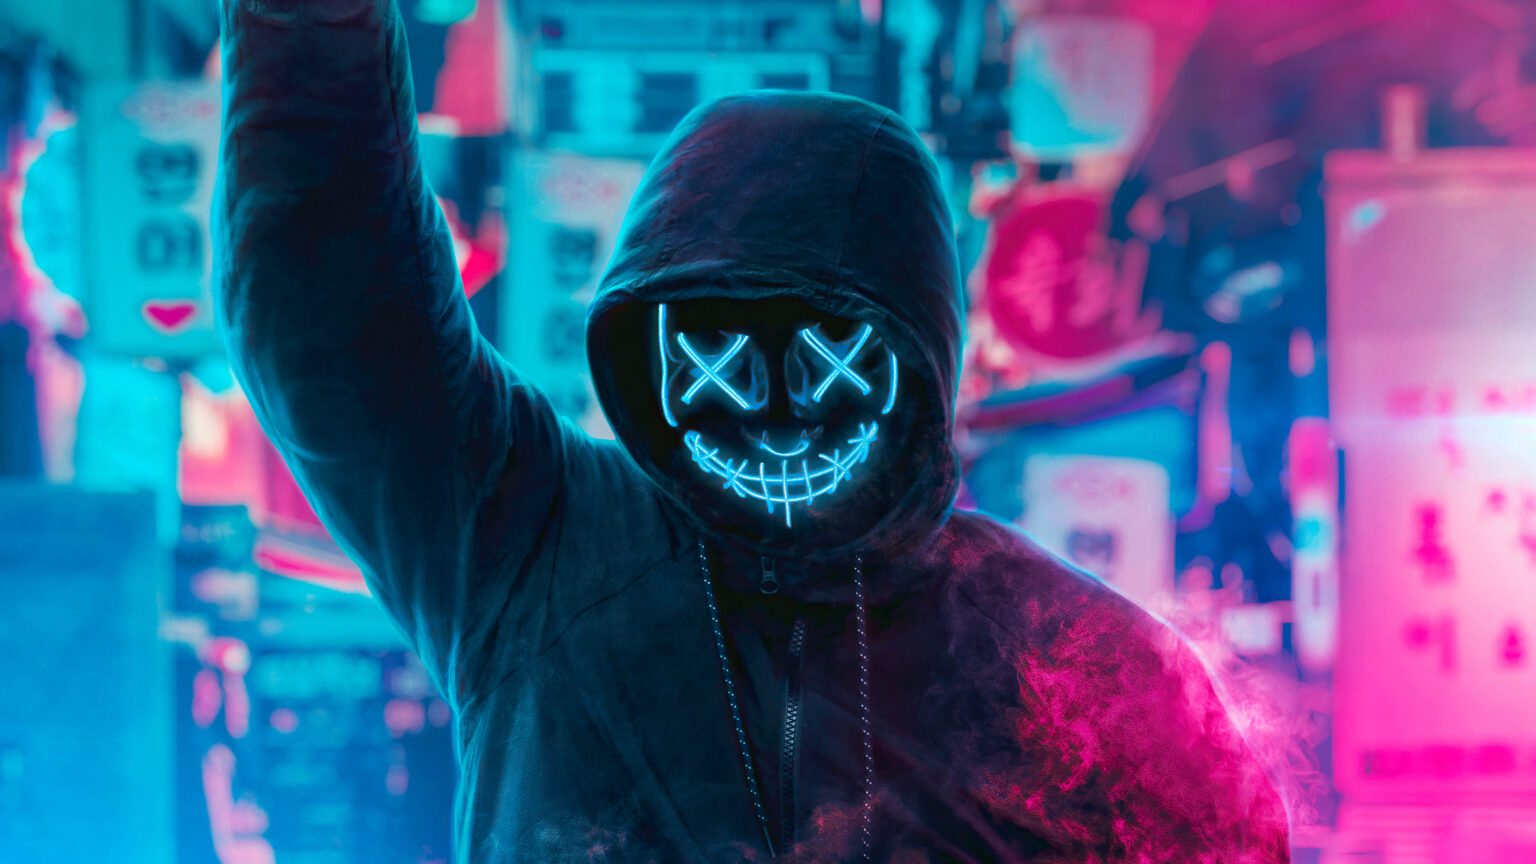 Mask Guy Neon Man With Smoke Bomb 4k